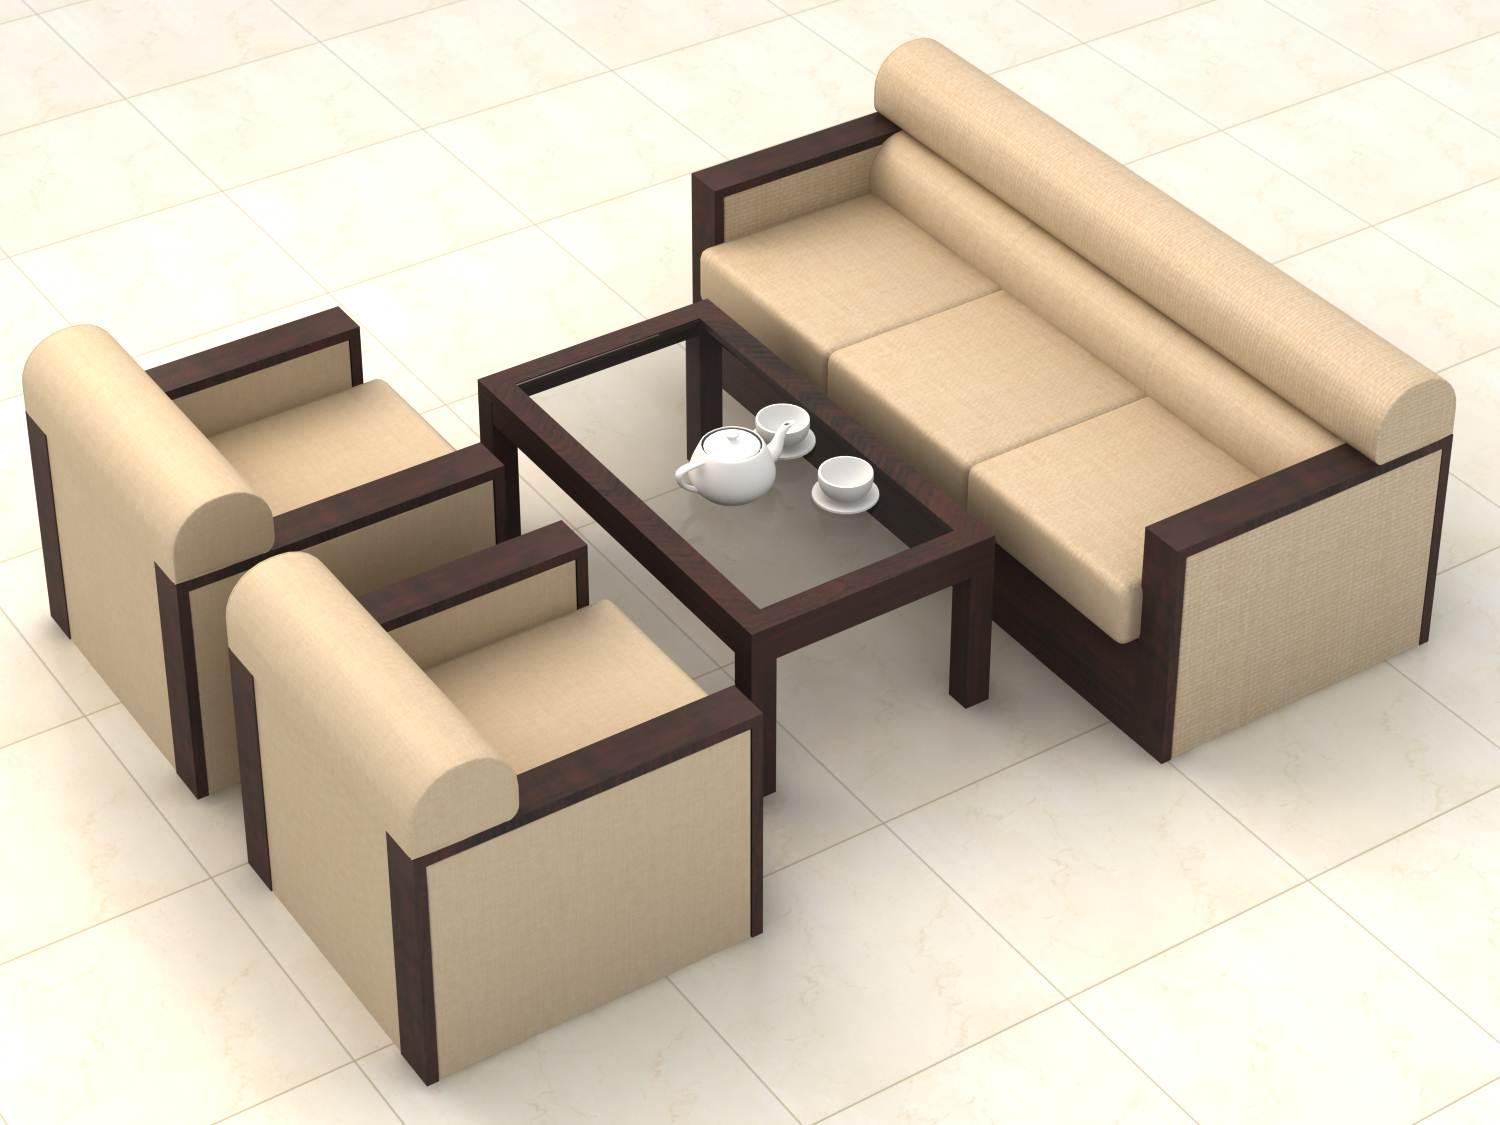 Sofa nhỏ phòng khách - Với không gian phòng khách nhỏ, bạn có thể gặp khó khăn trong việc chọn lựa nội thất. Nhưng đừng lo, chiếc sofa nhỏ phòng khách này sẽ là giải pháp hoàn hảo cho vấn đề của bạn. Với thiết kế đơn giản và nhỏ gọn, chiếc sofa này sẽ mang lại sự thoải mái và tinh tế cho không gian phòng khách nhỏ của bạn. Hãy xem ngay hình ảnh liên quan để có một cái nhìn đầy đủ về chiếc sofa này.